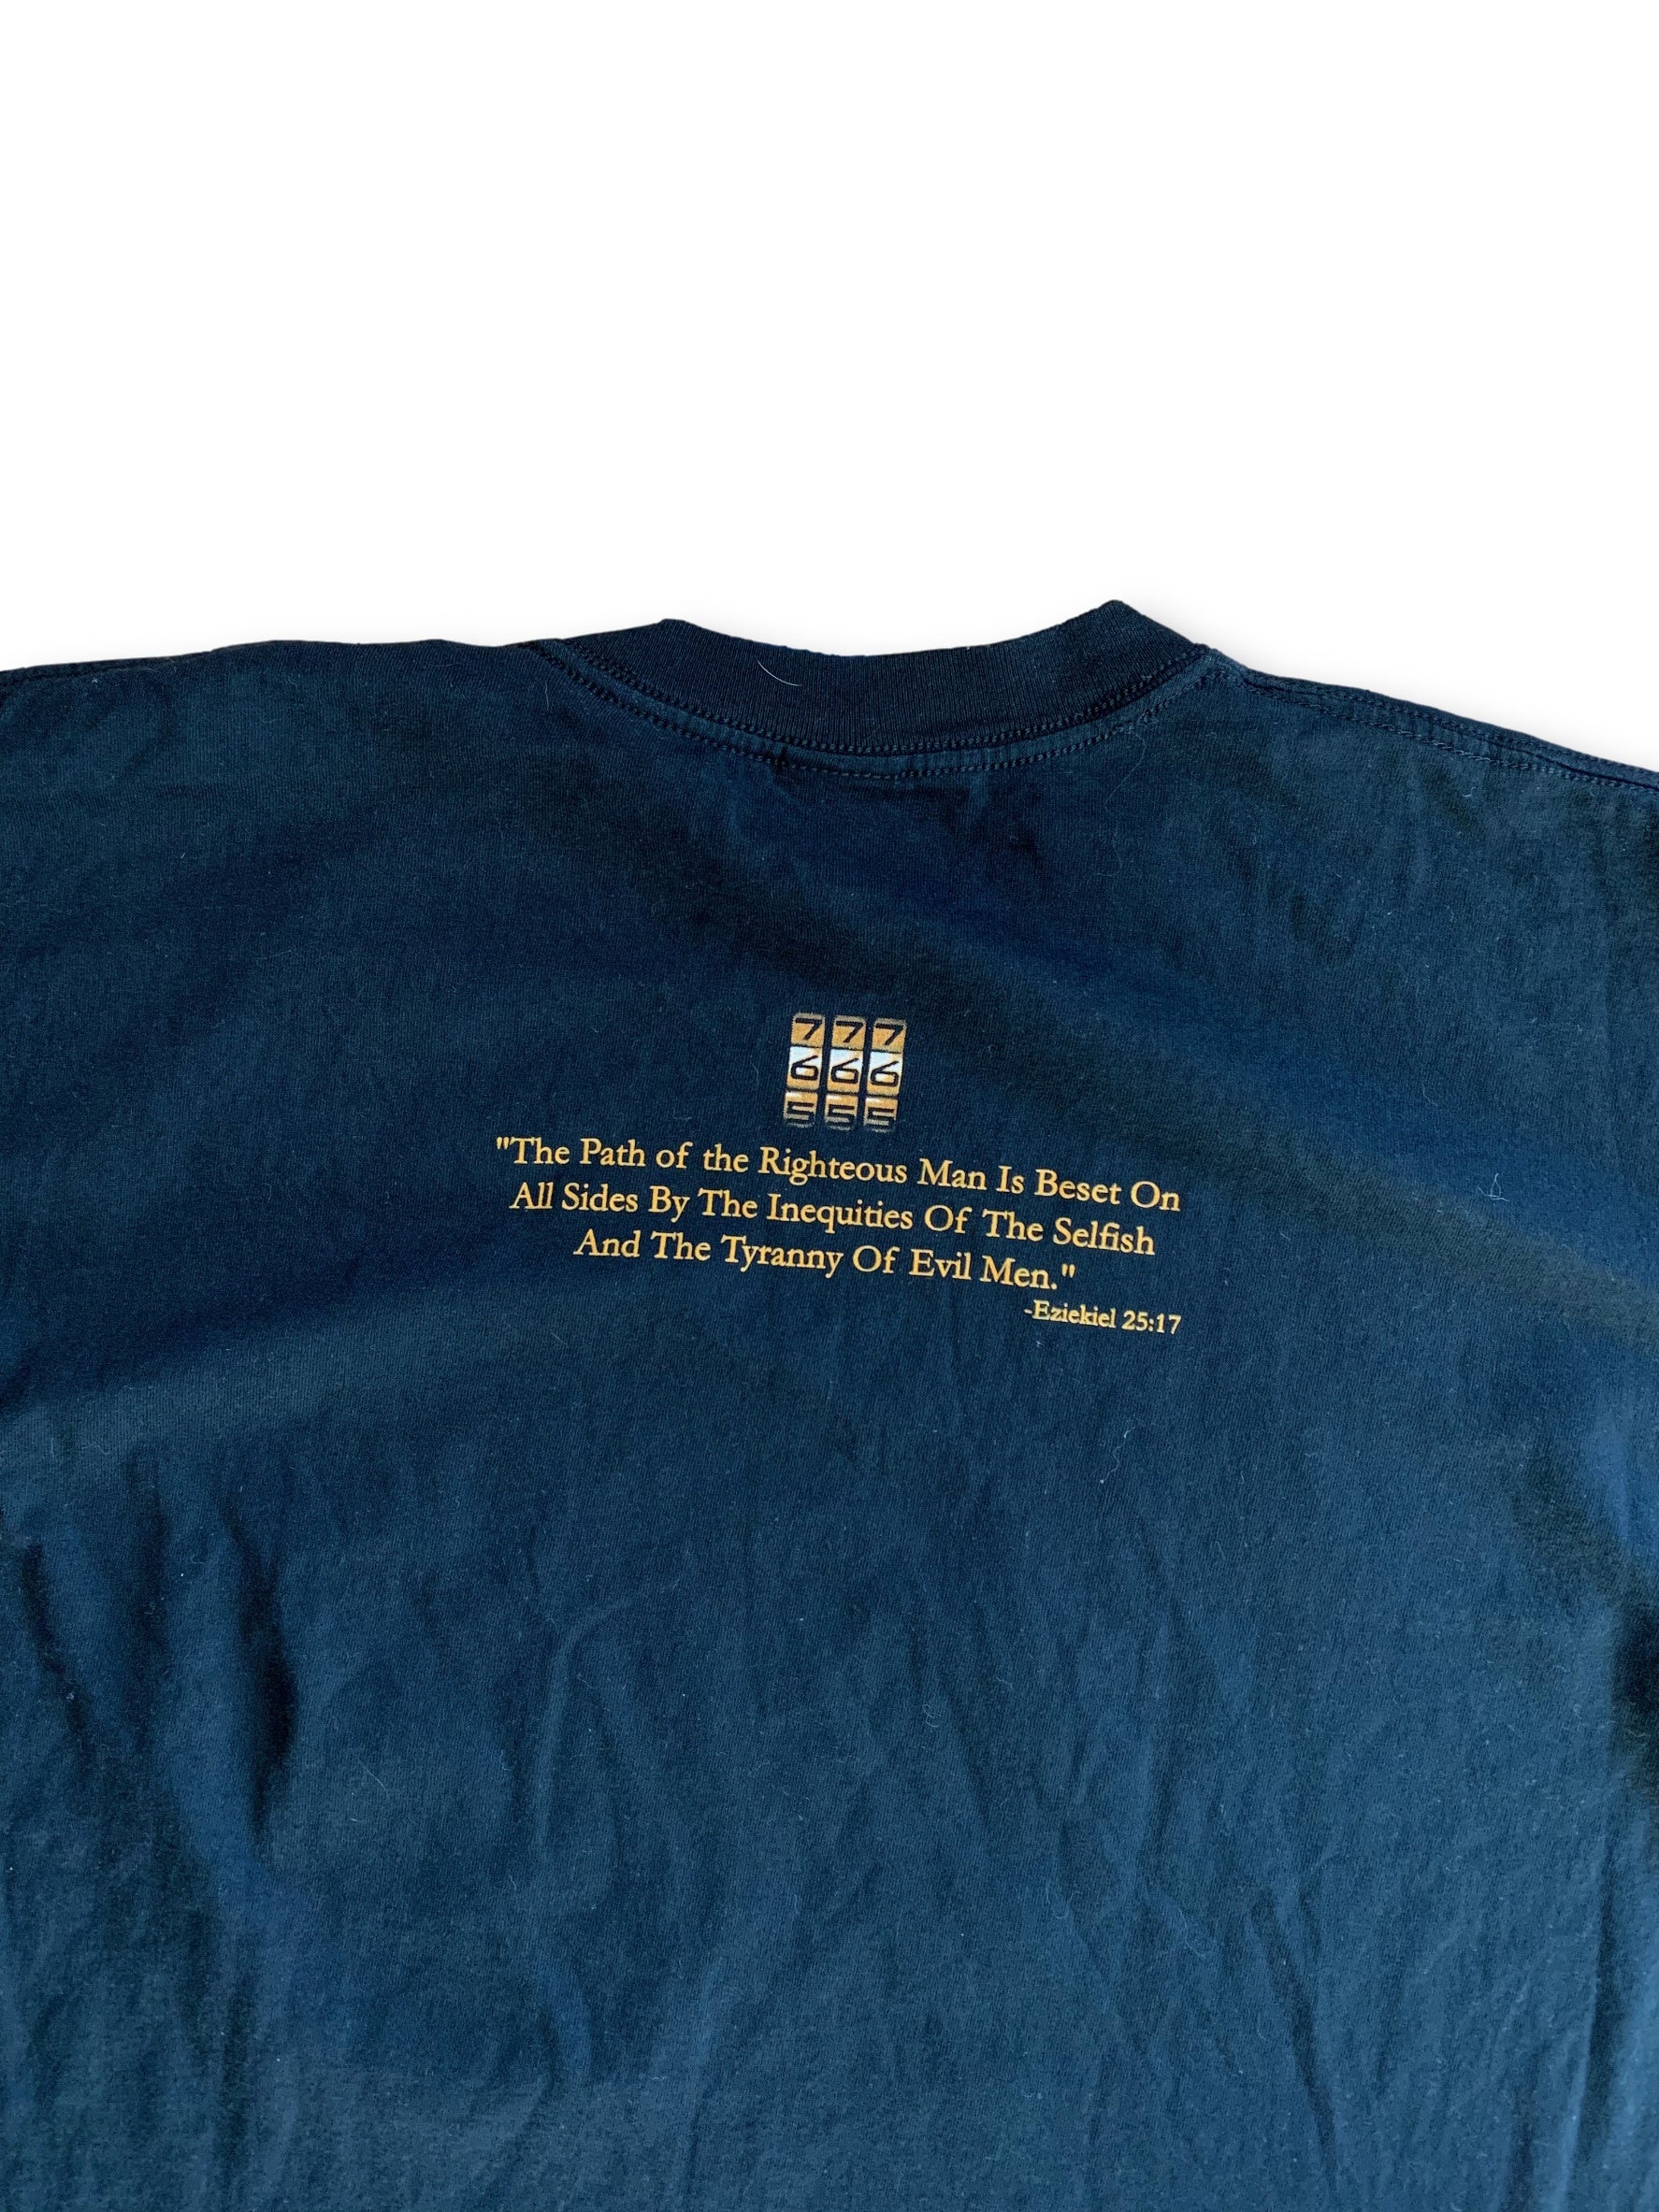 Vintage 2004 Pulp Fiction T-Shirt - XL